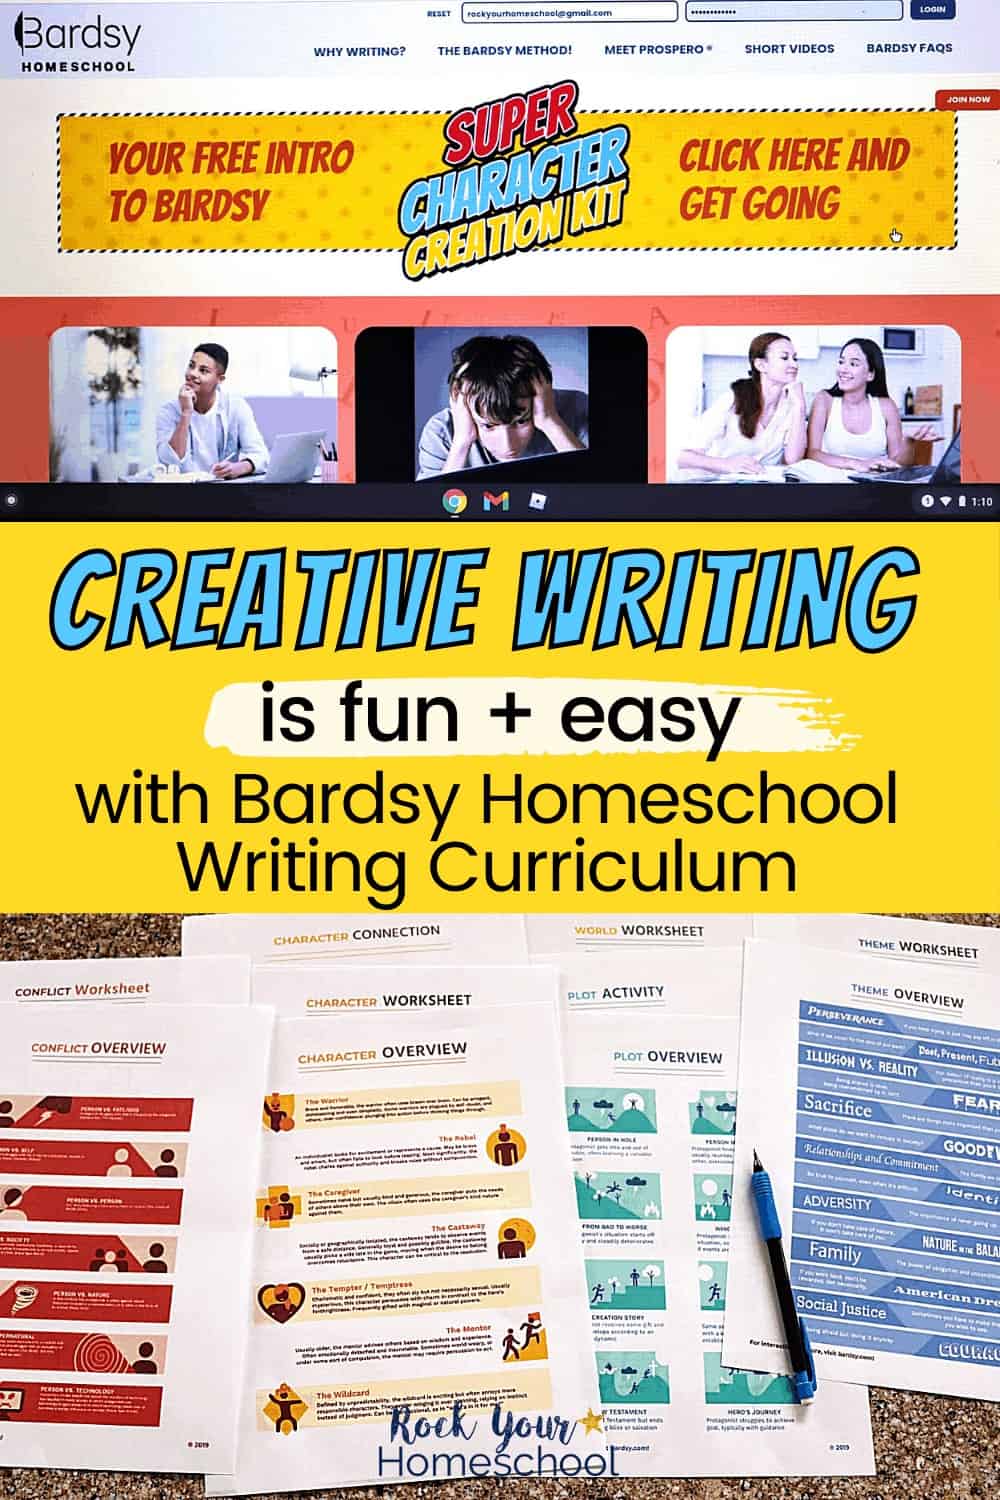 How to Make Teaching Creative Writing Fun & Easy